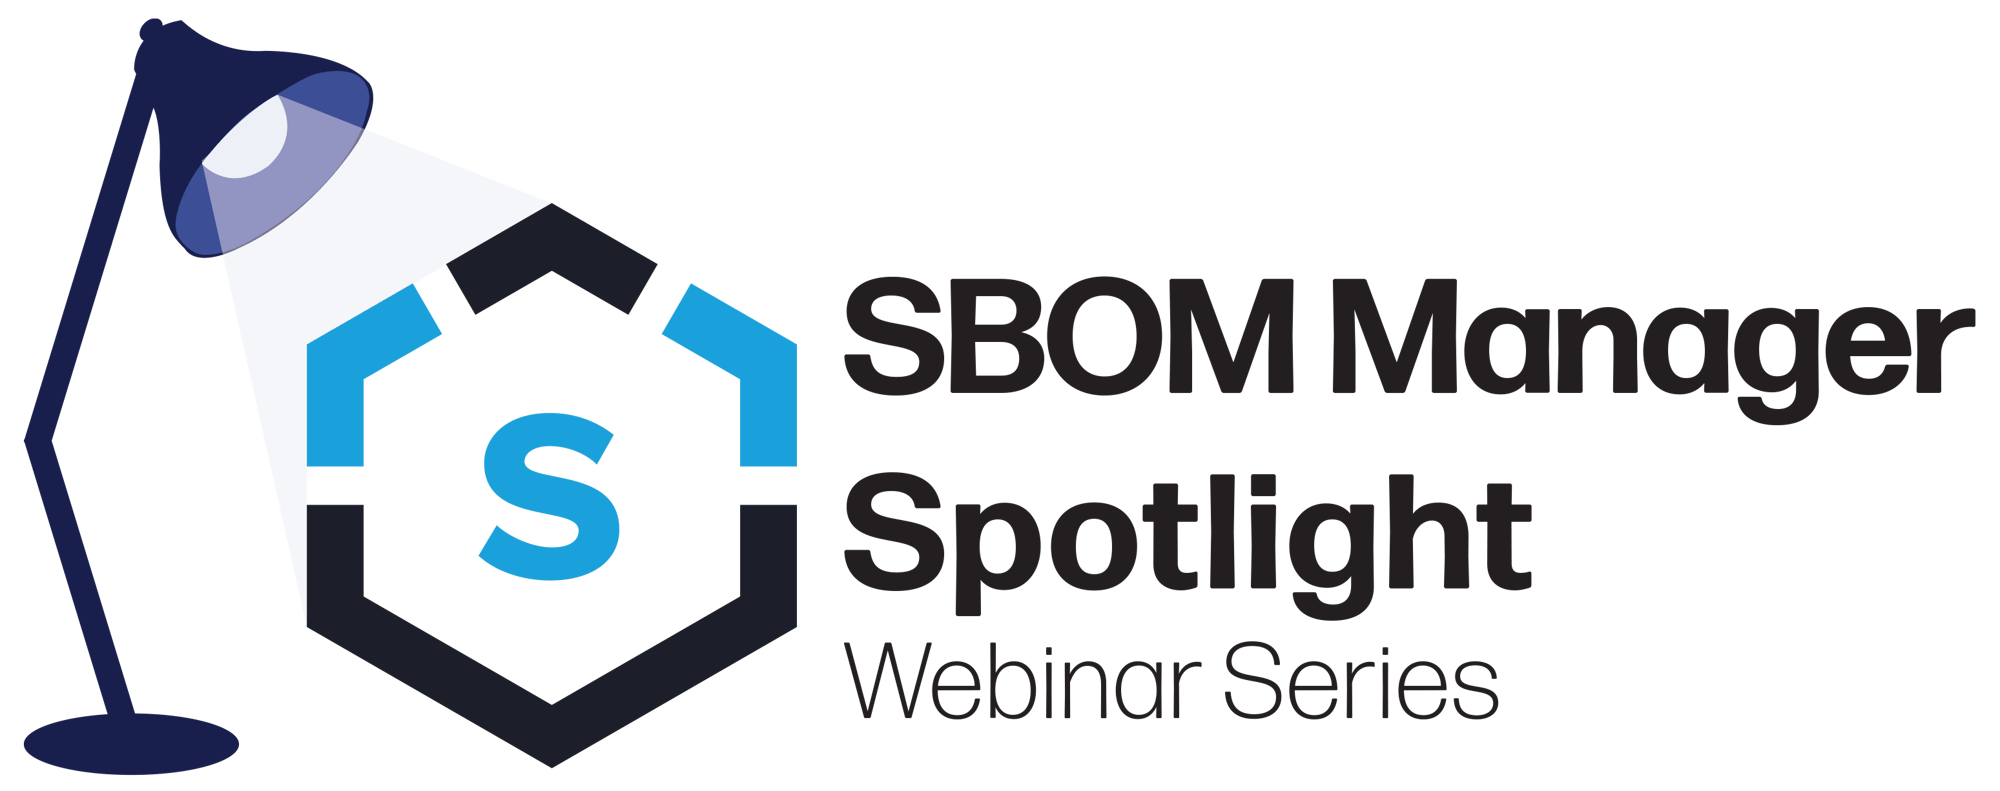 SBOM manager spotlight logo-2